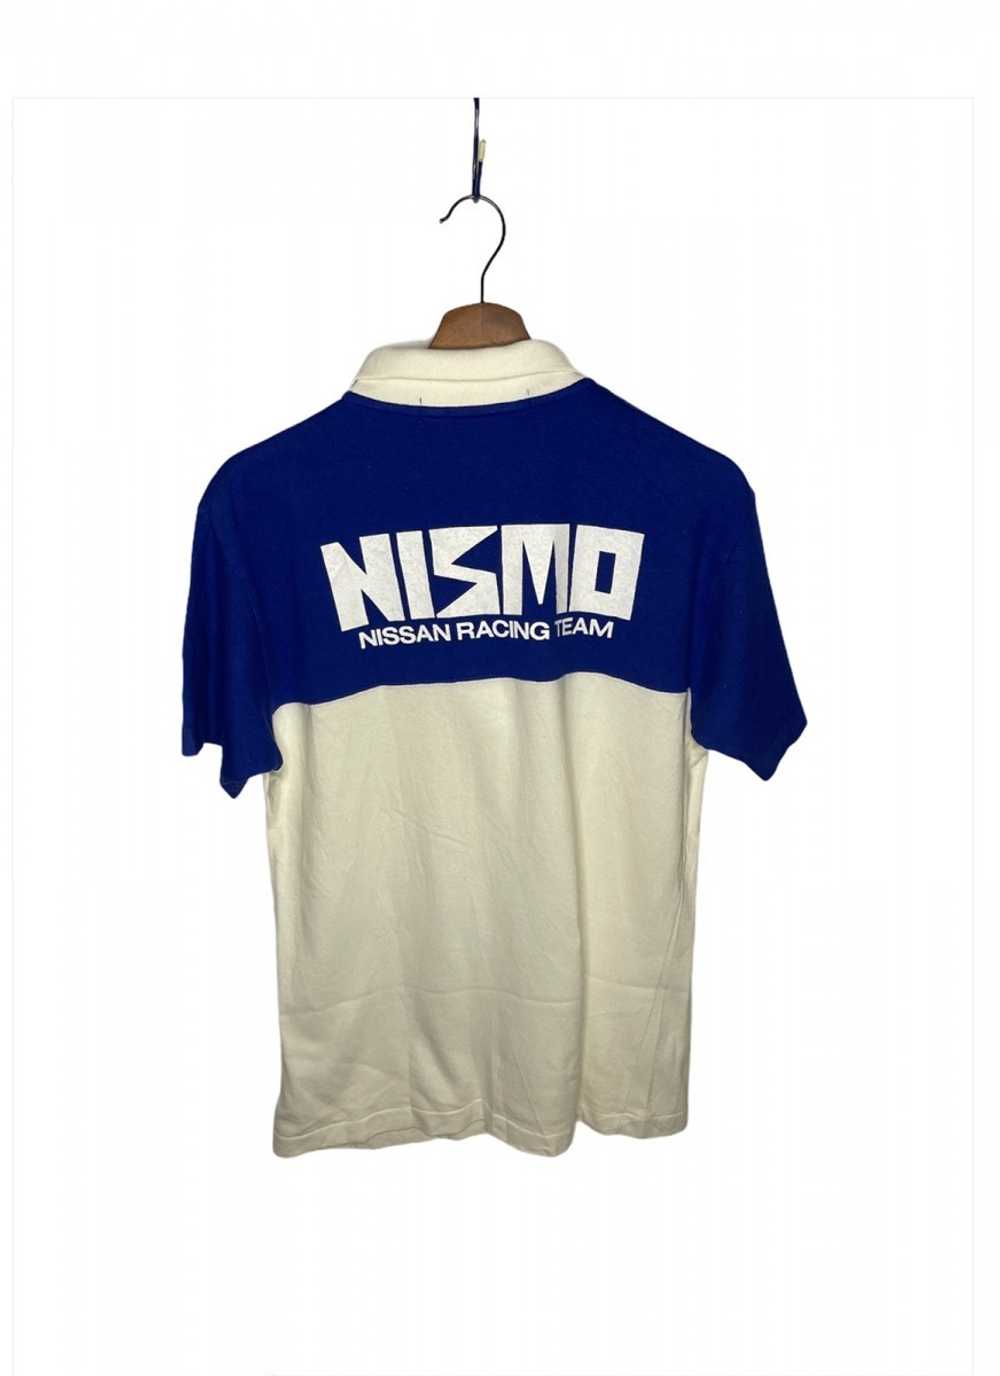 Racing - Nismo Nissan Team Polo Tshirt - image 2